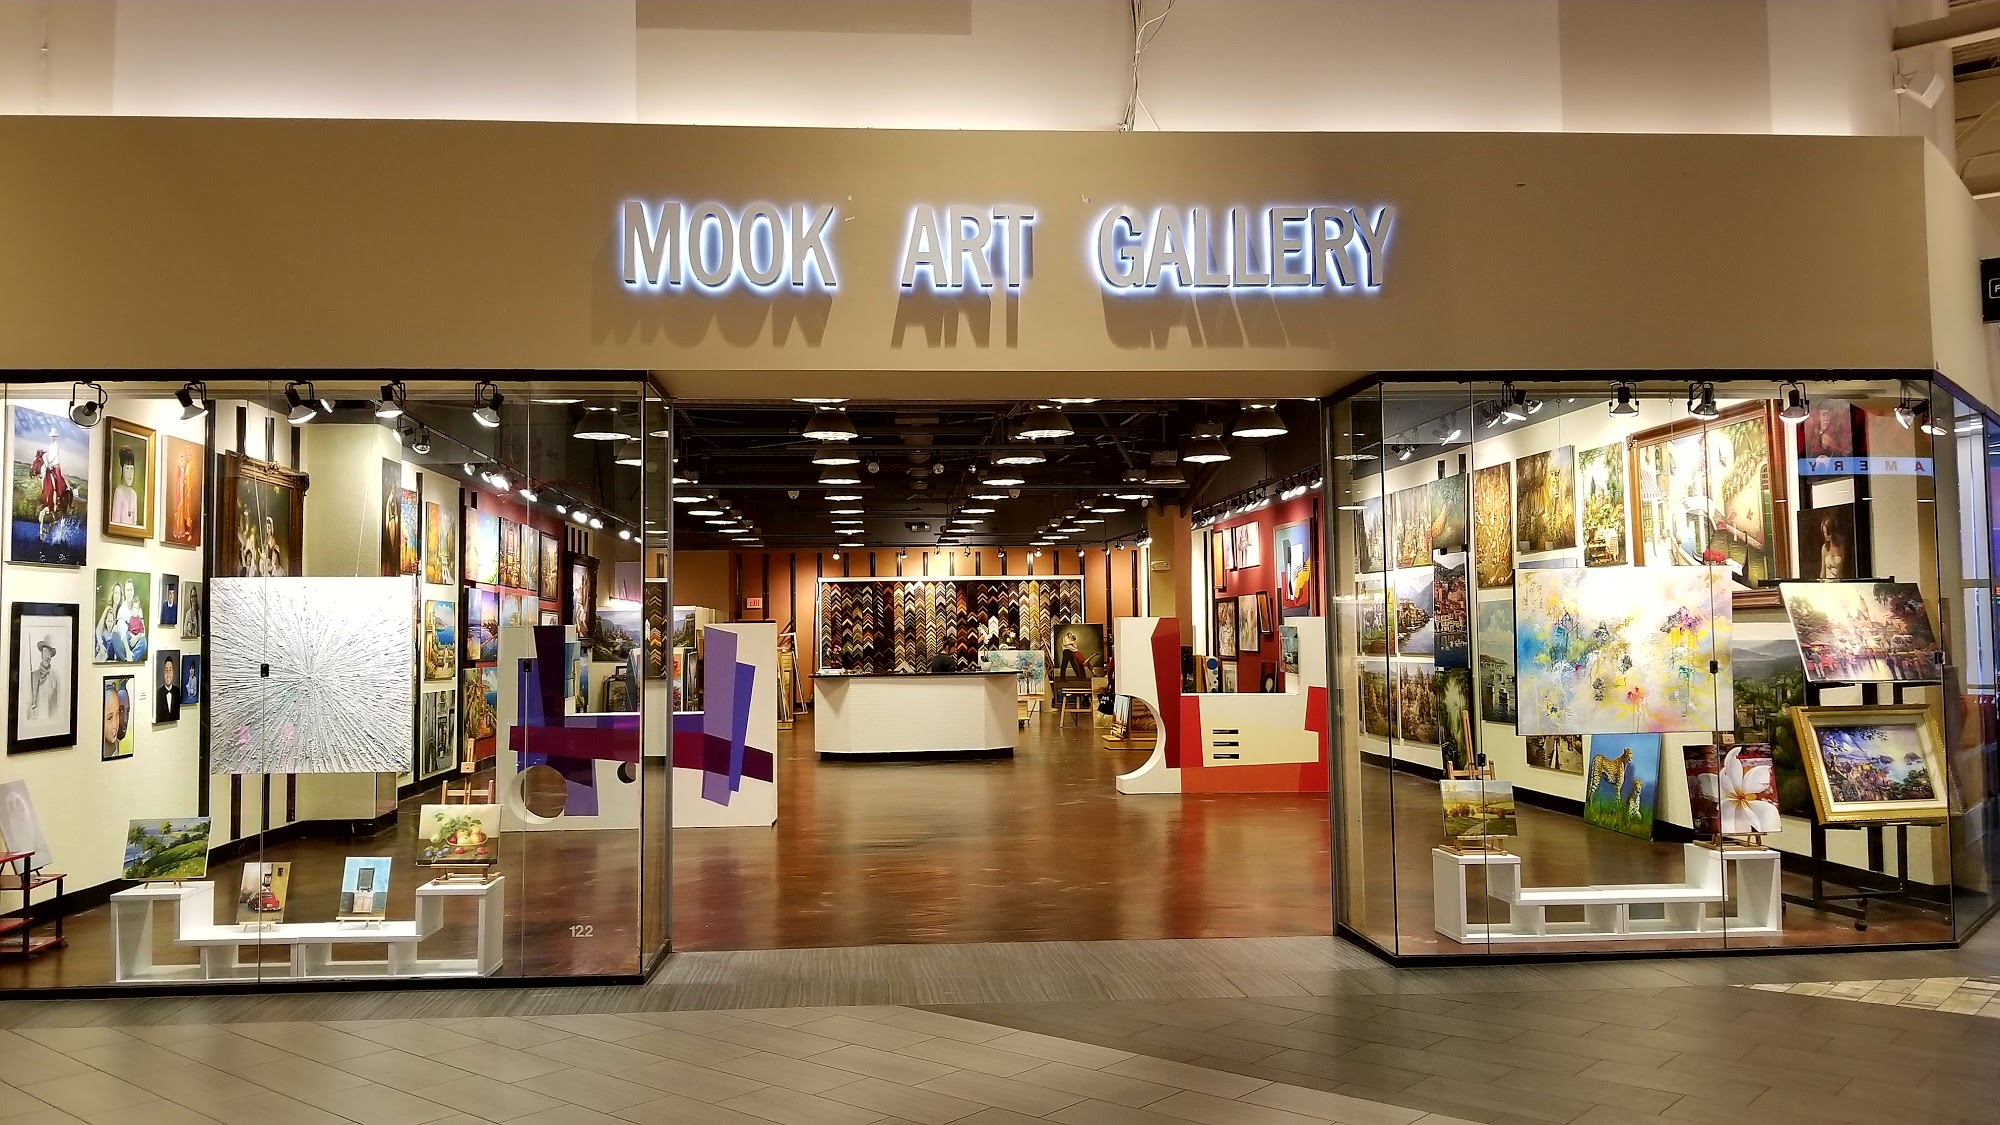 Mook Art Gallery